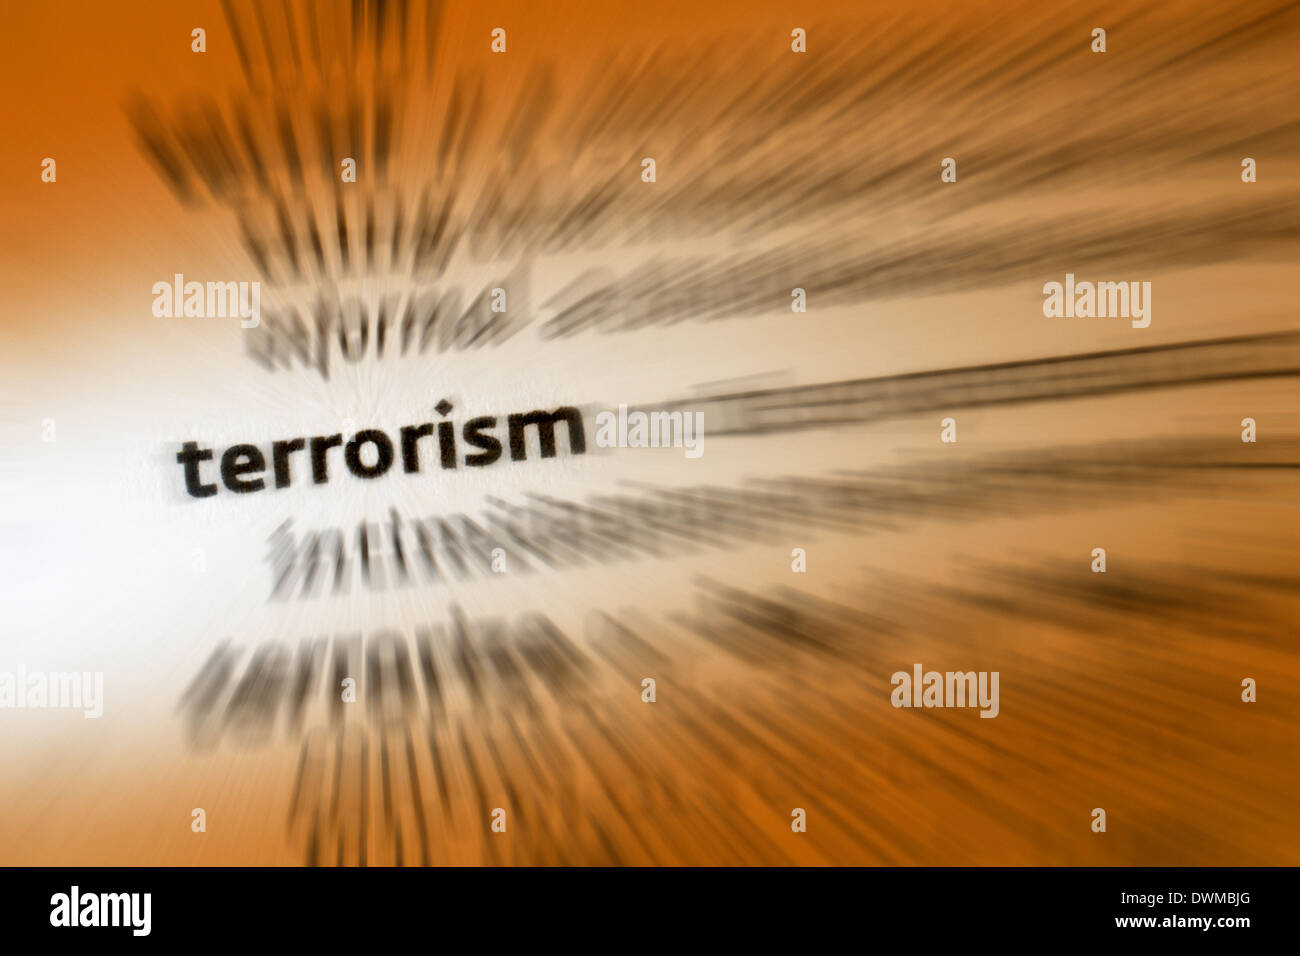 Le terrorisme est l'usage de la violence et d'intimidation dans la poursuite d'objectifs politiques. Banque D'Images